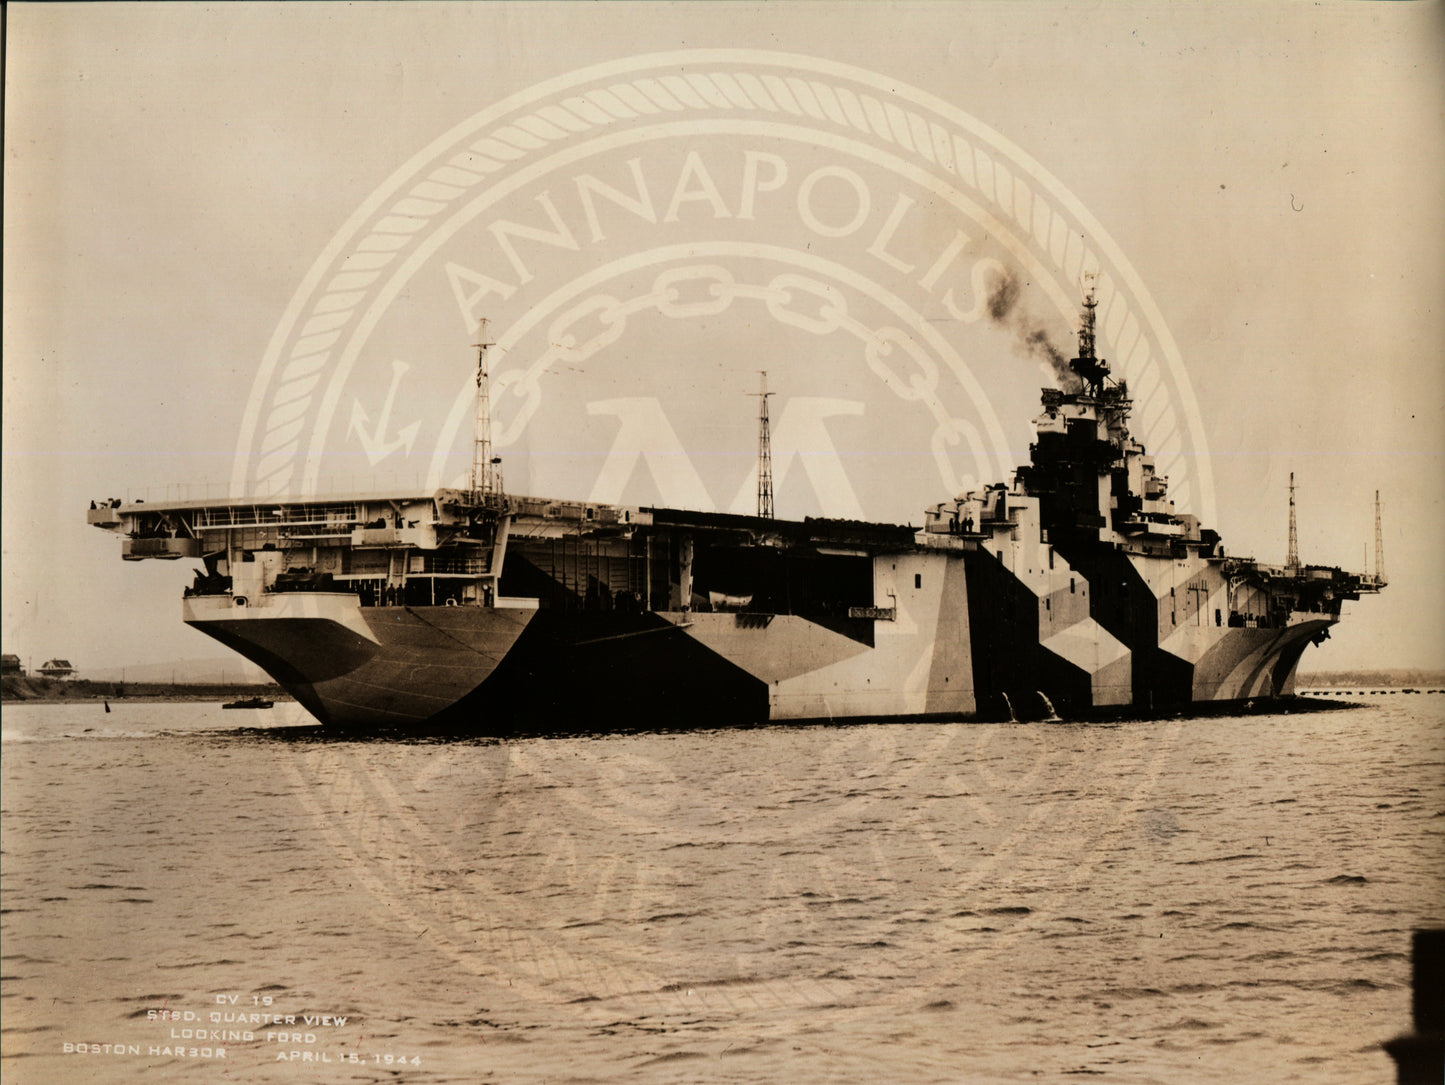 USS Hancock (CV-19) Aircraft Carrier